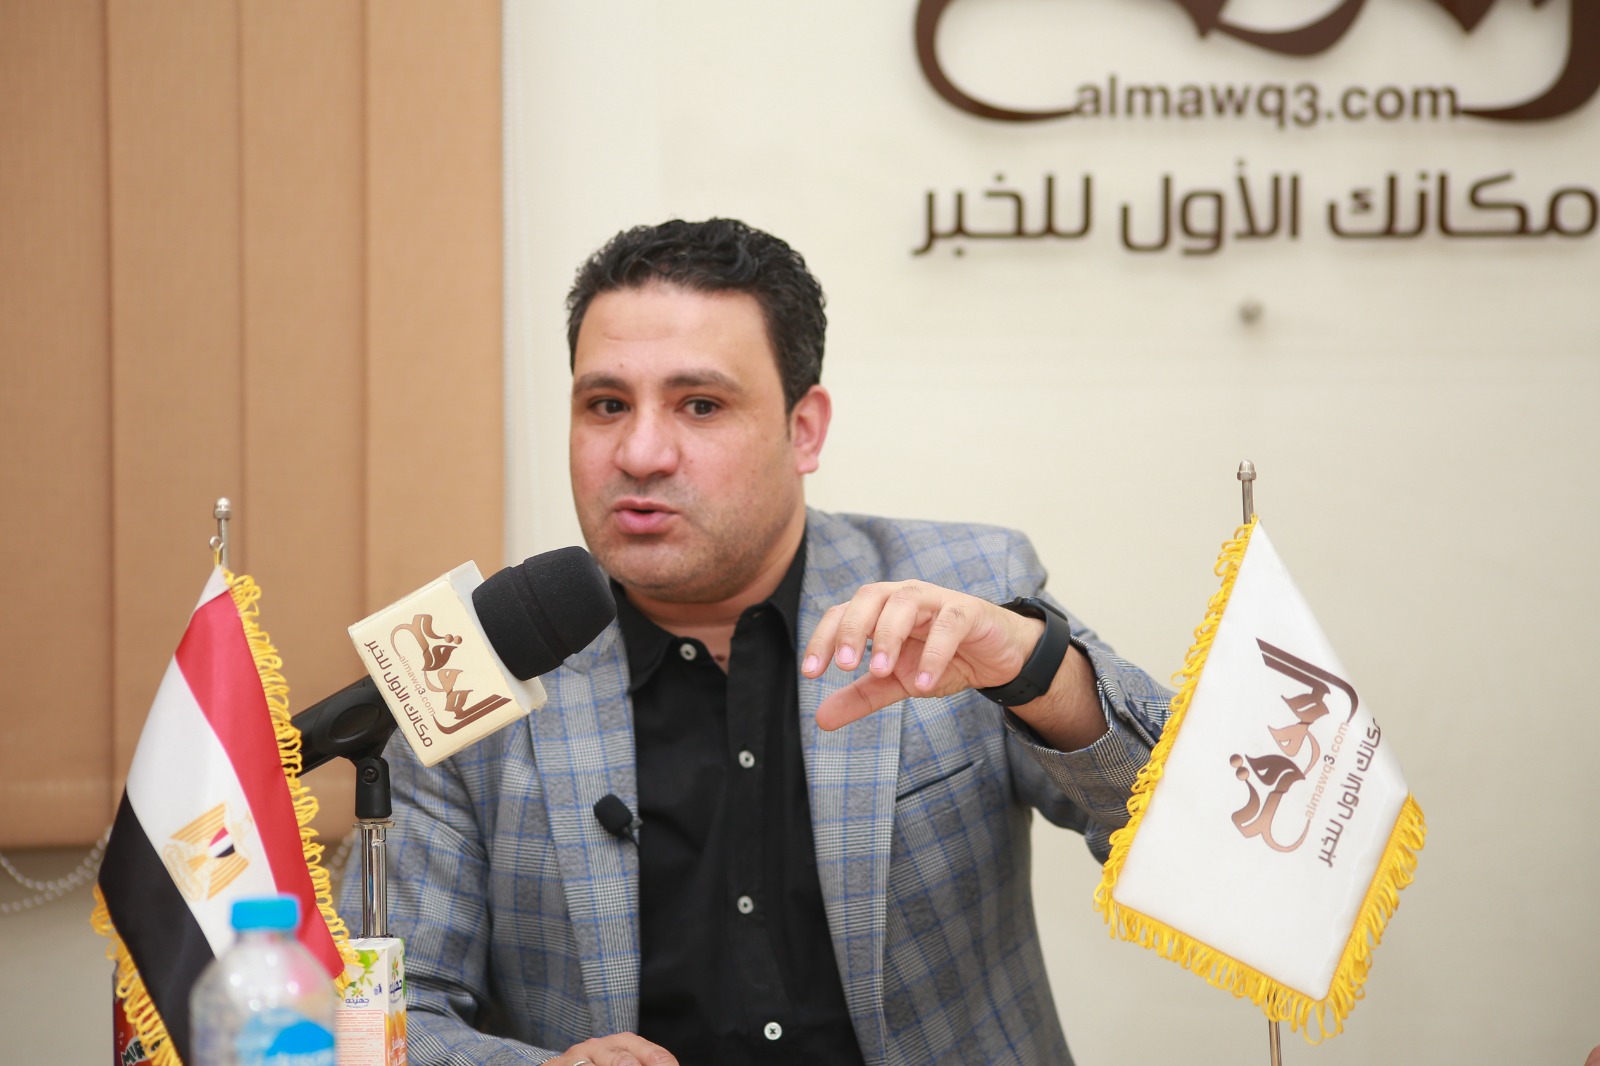 الإعلامي الرياضي كريم أبو حسين